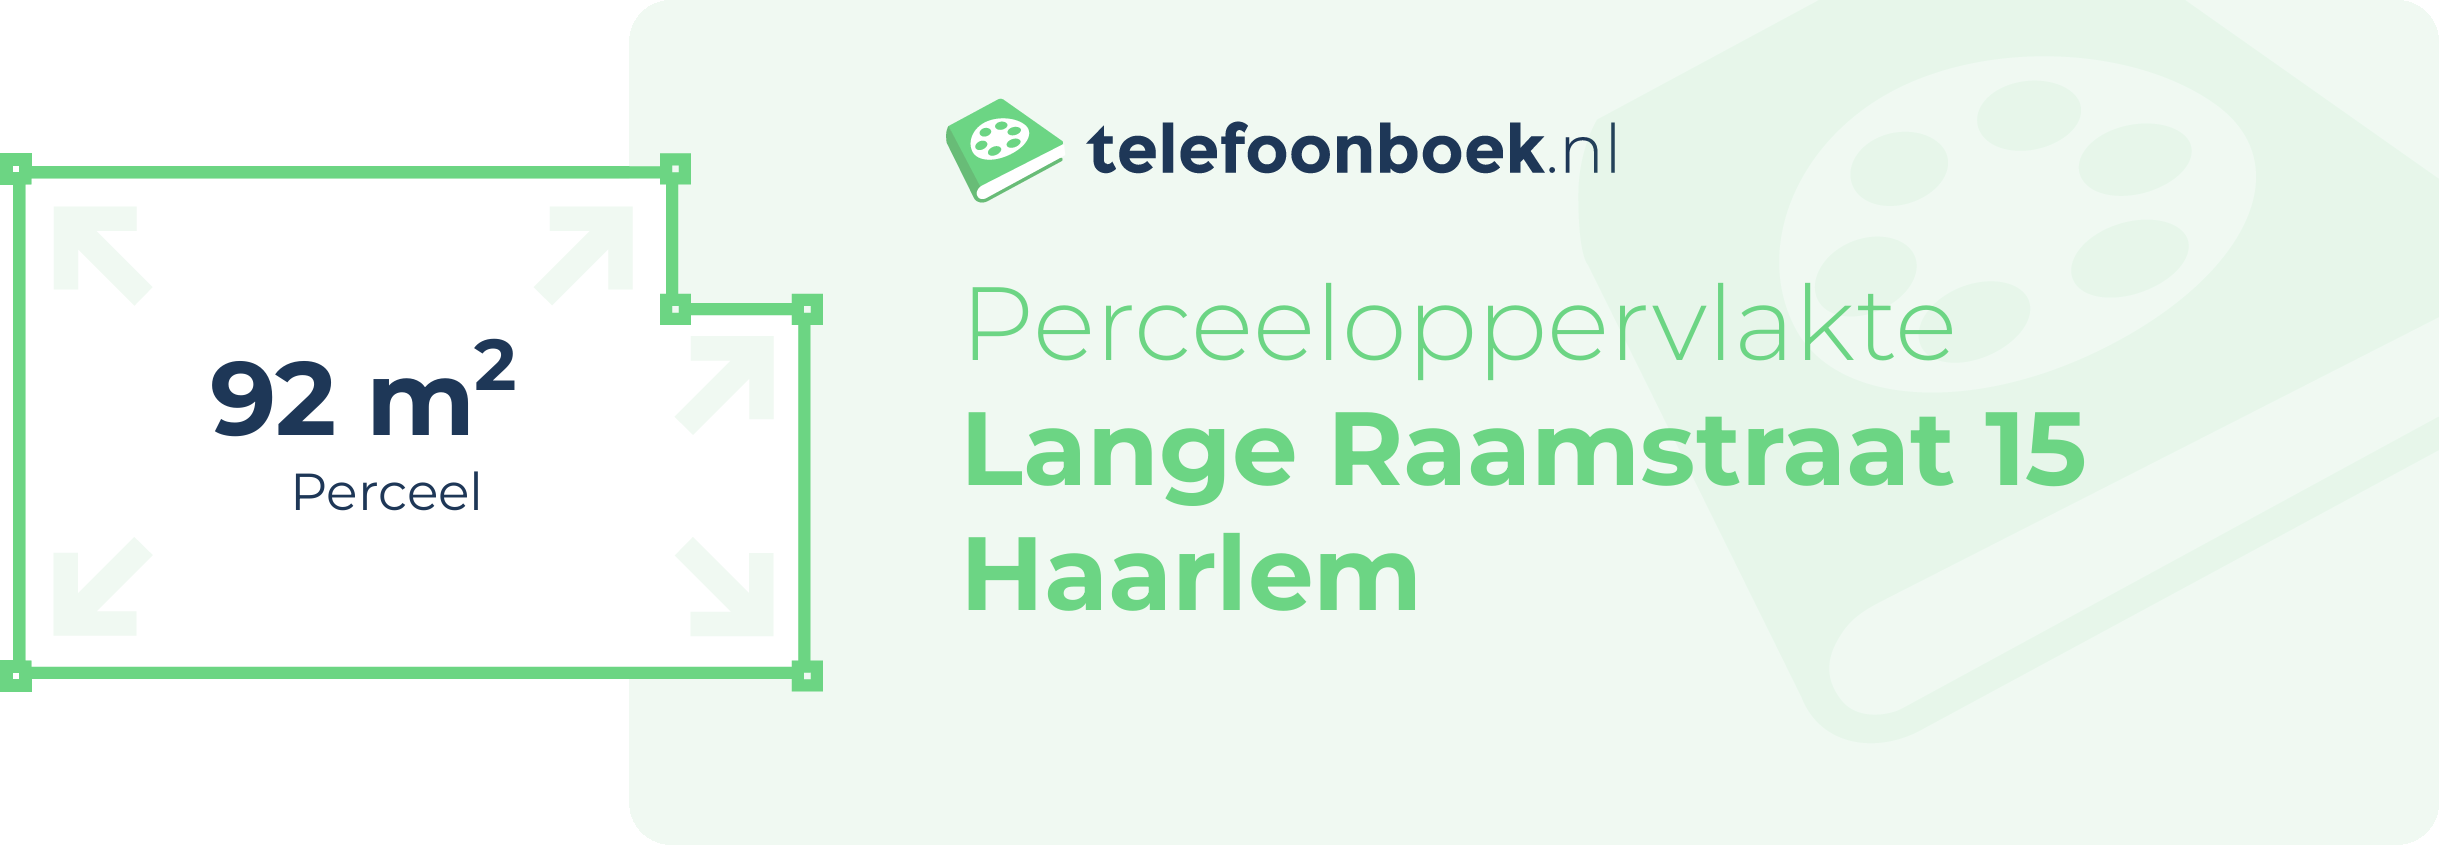 Perceeloppervlakte Lange Raamstraat 15 Haarlem